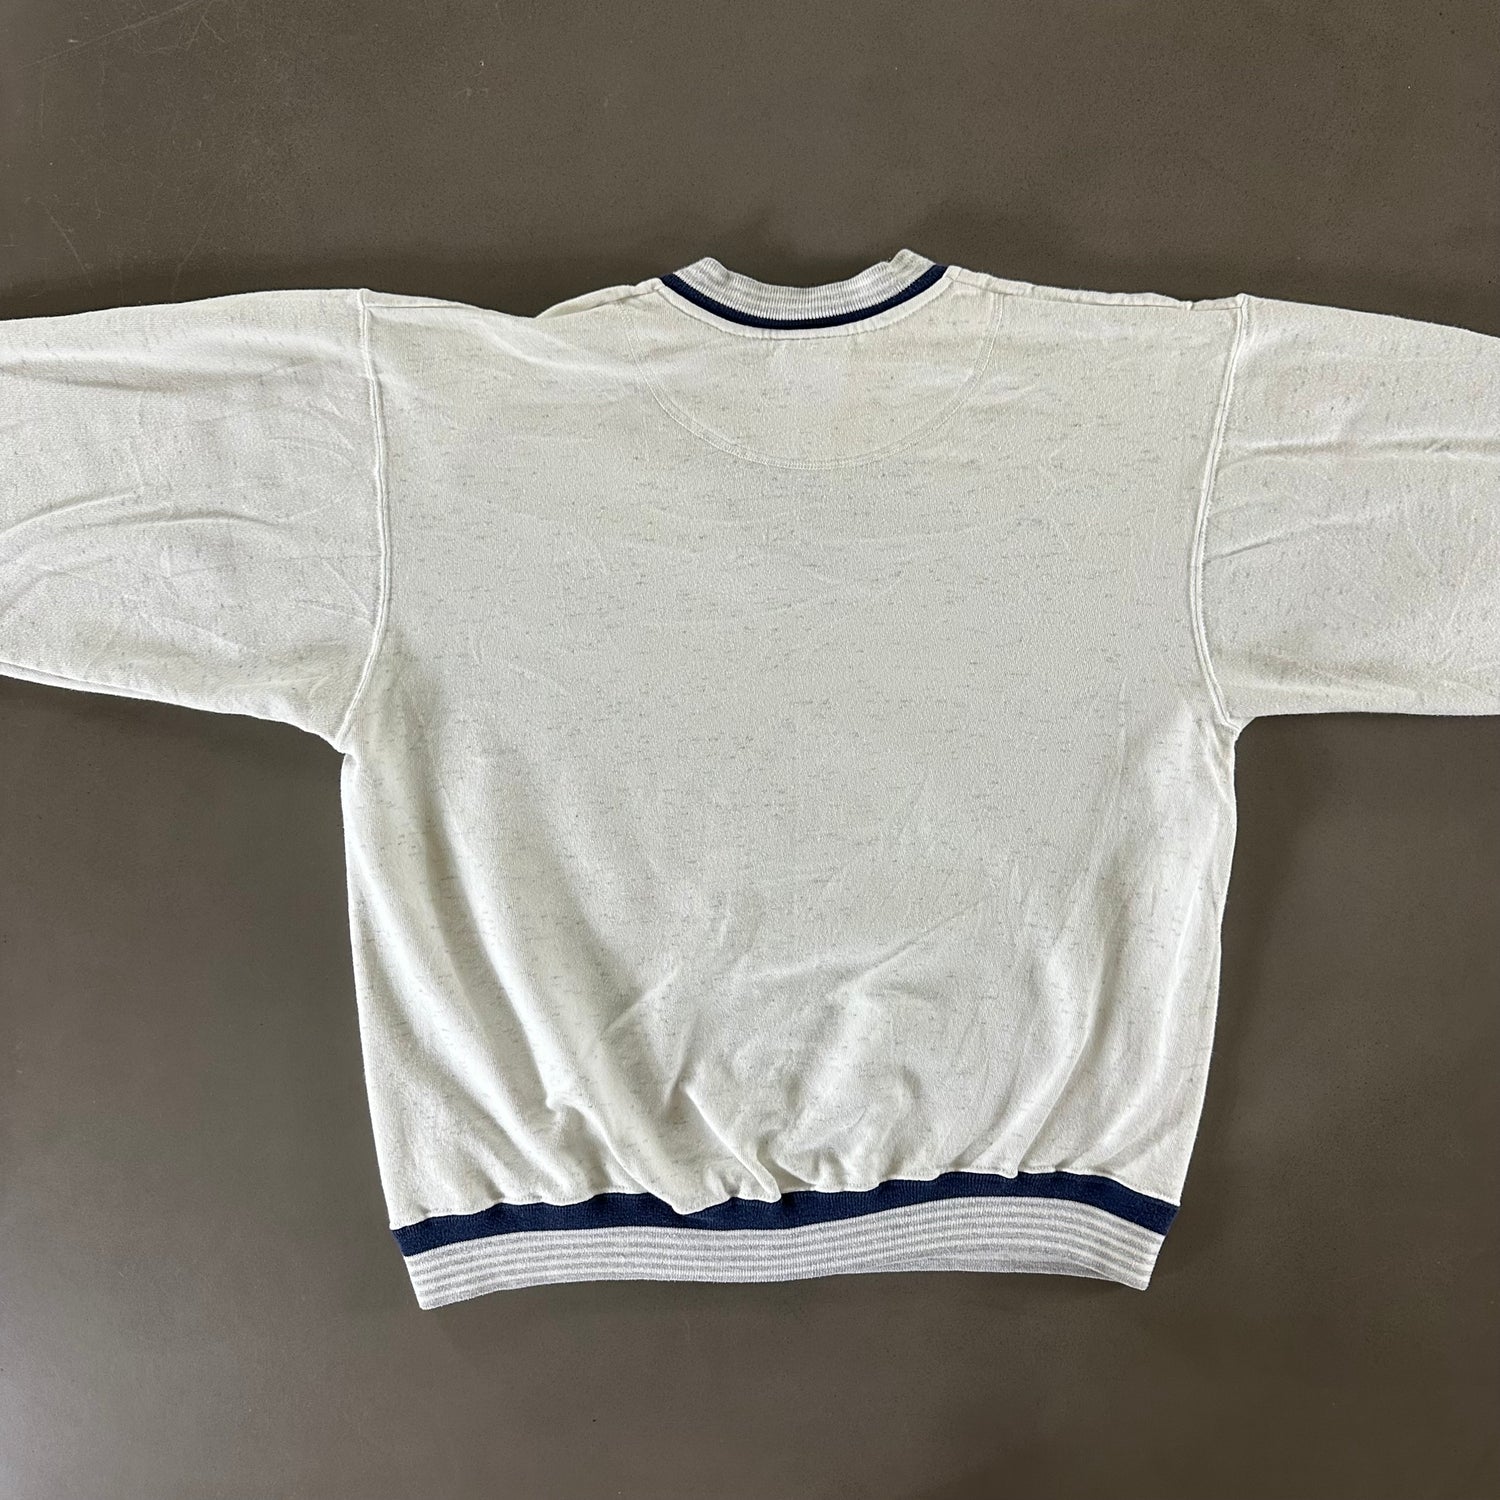 Vintage 1990s Lake Tahoe Sweatshirt size Large